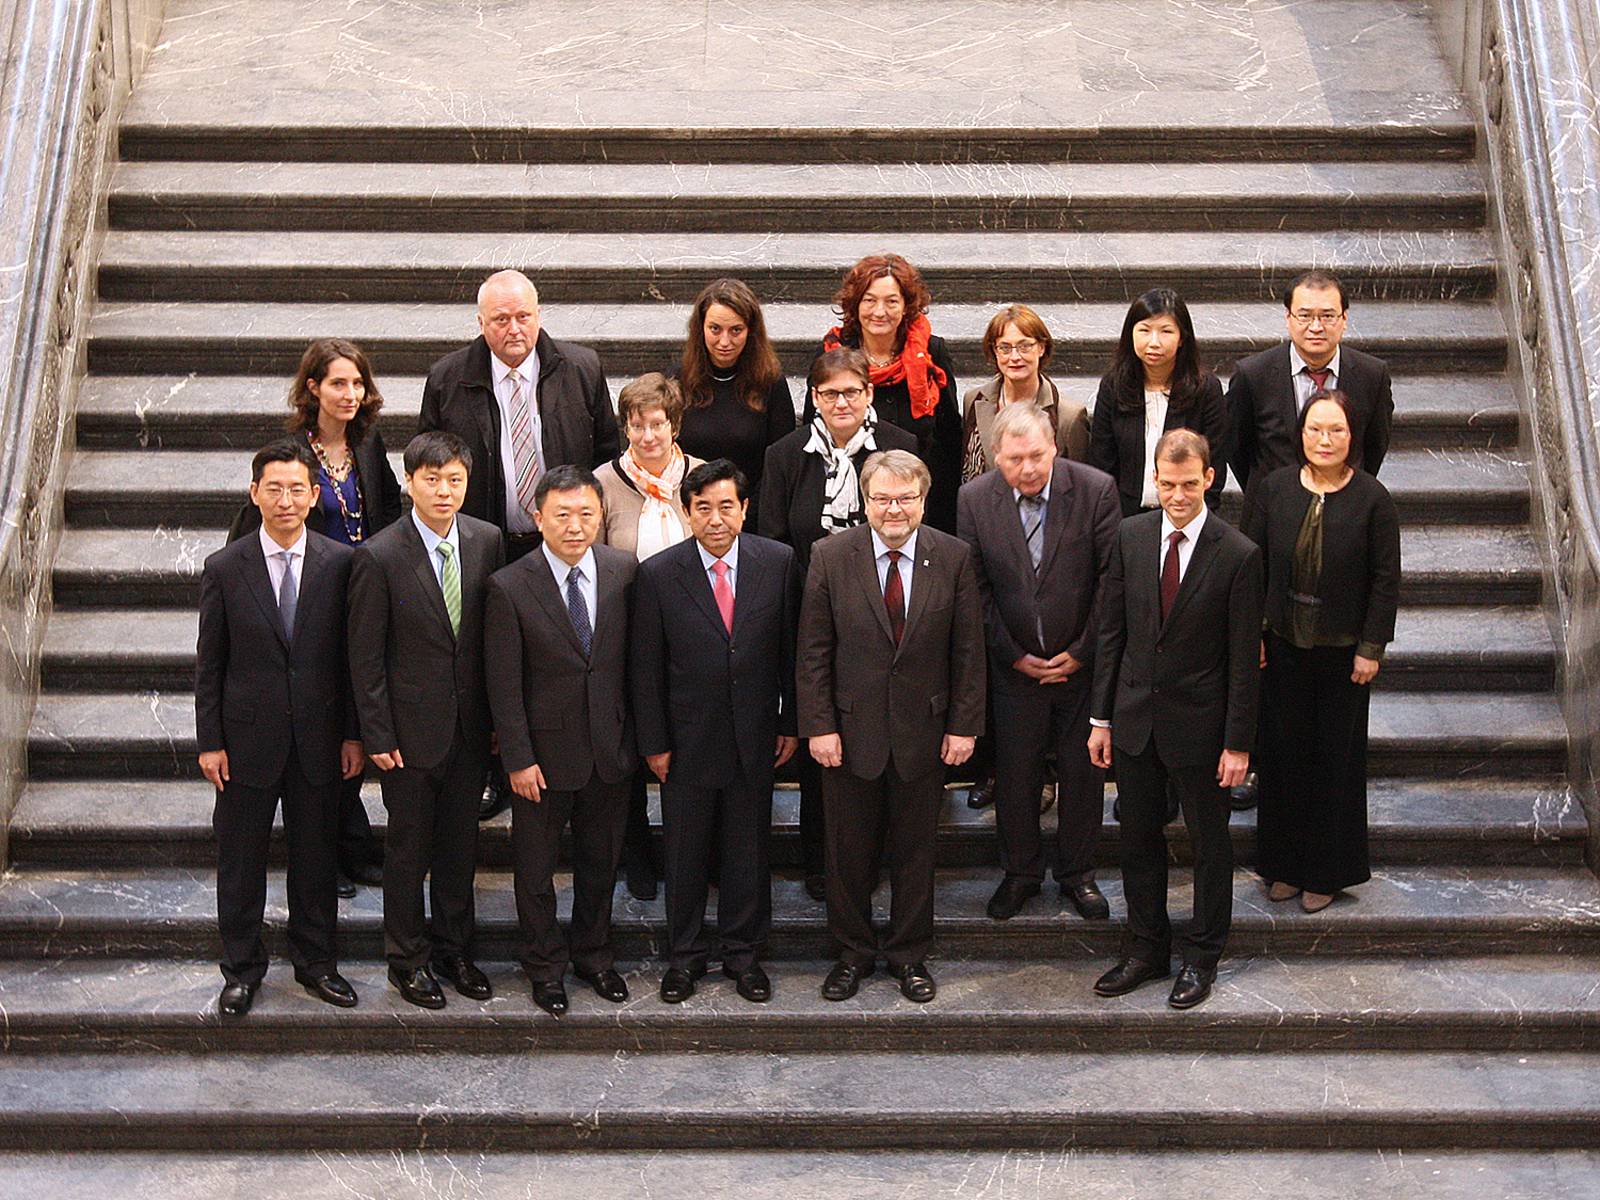 Die chinesische Delegation mit Bürgermeister Hermann und der Ersten Stadträtin, Frau Tegtmeyer-Dette, auf der Rathaustreppe.